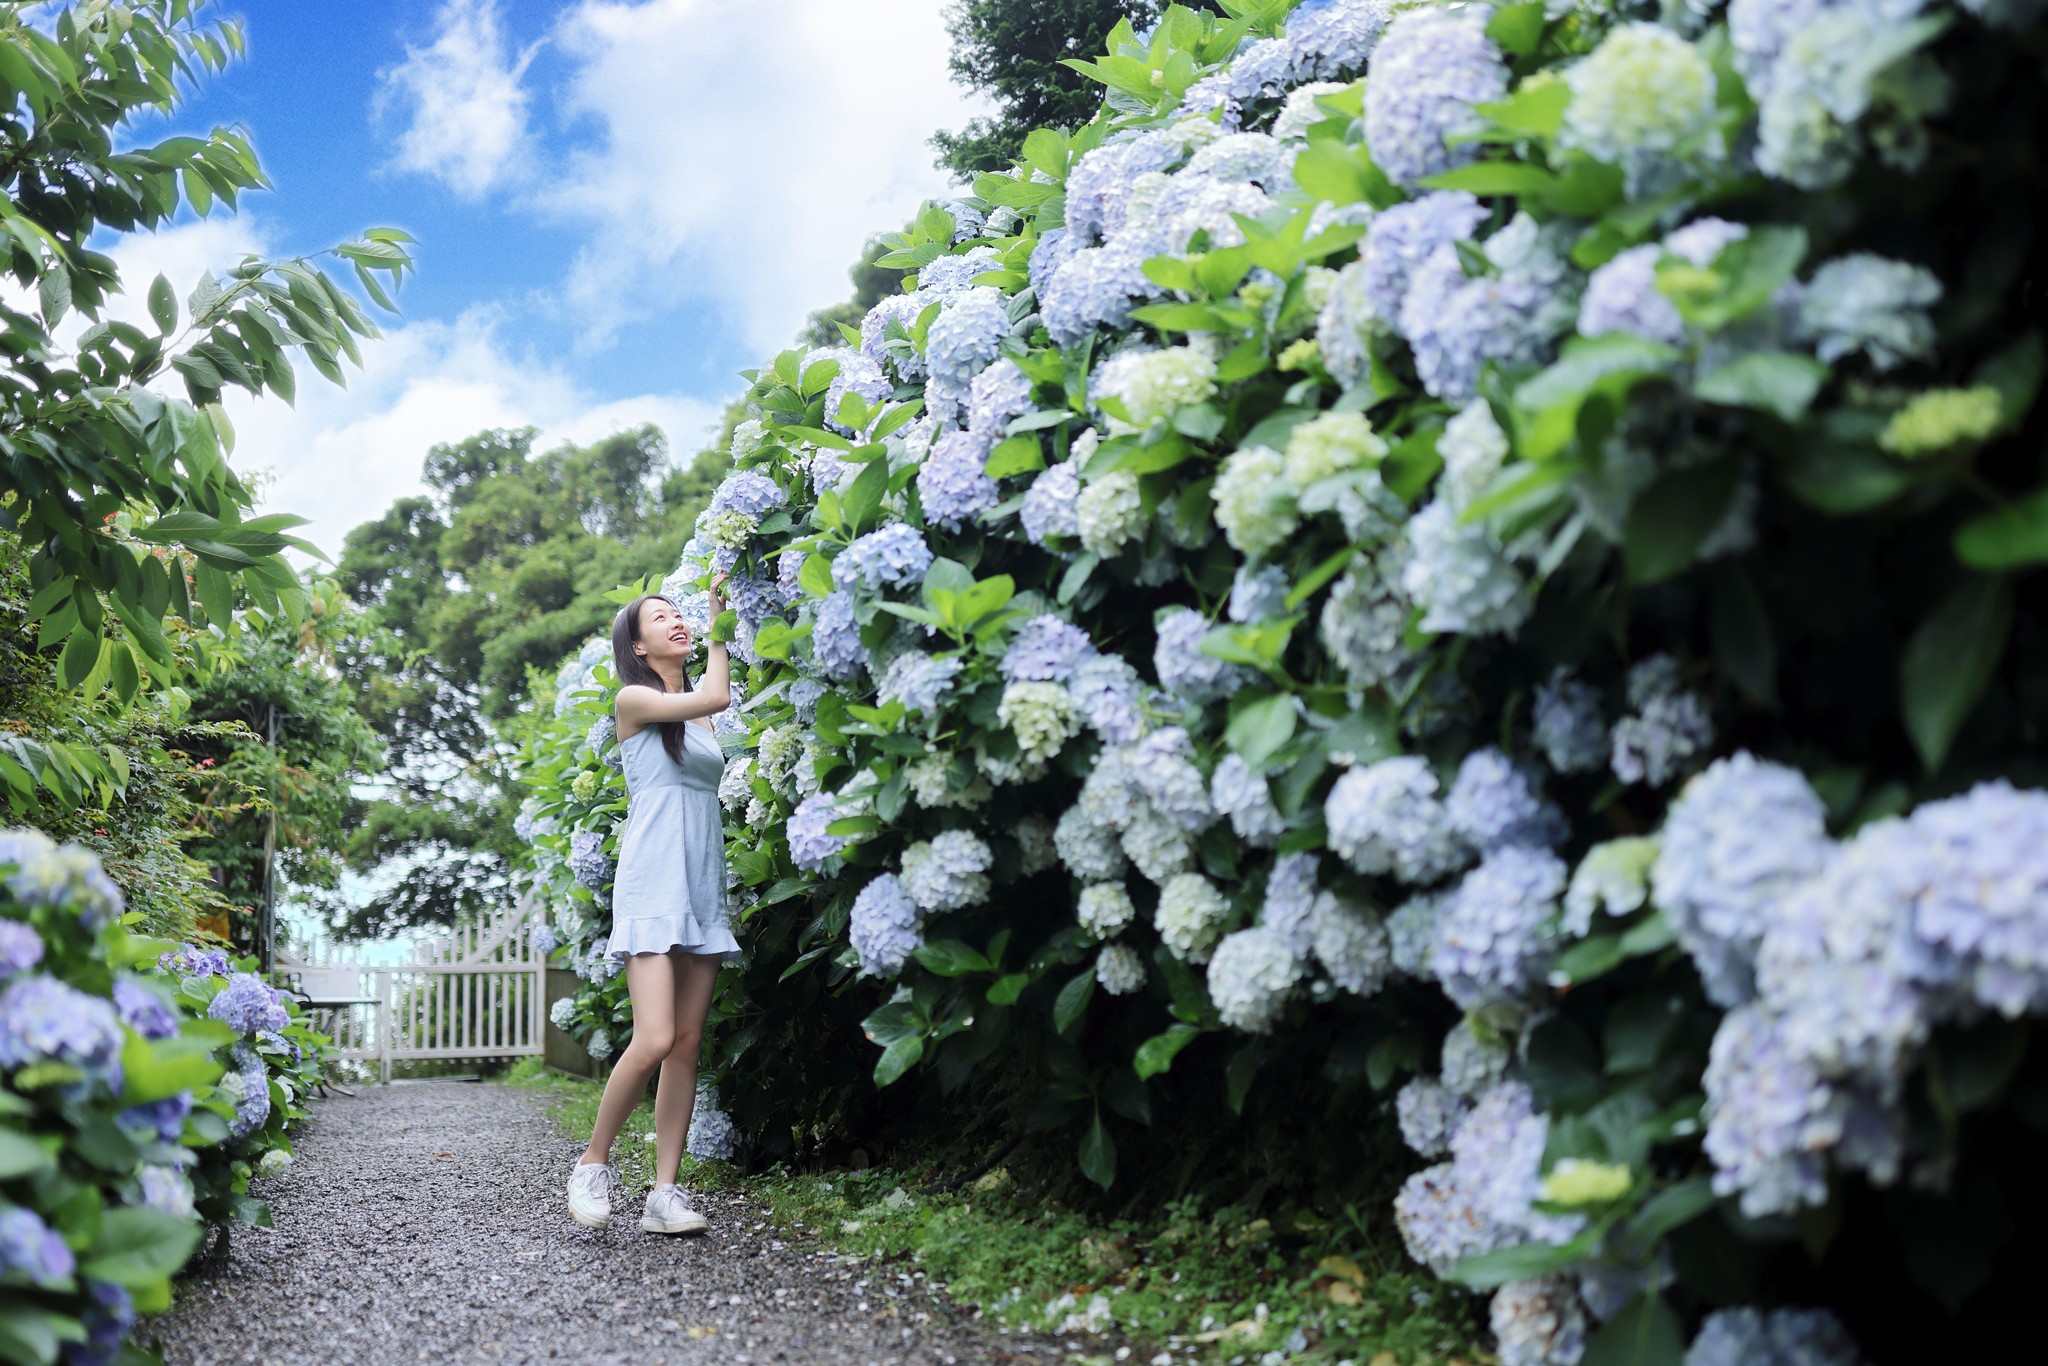 竹子湖超美「大梯田花卉生態農園」繡球花與門票優惠整理